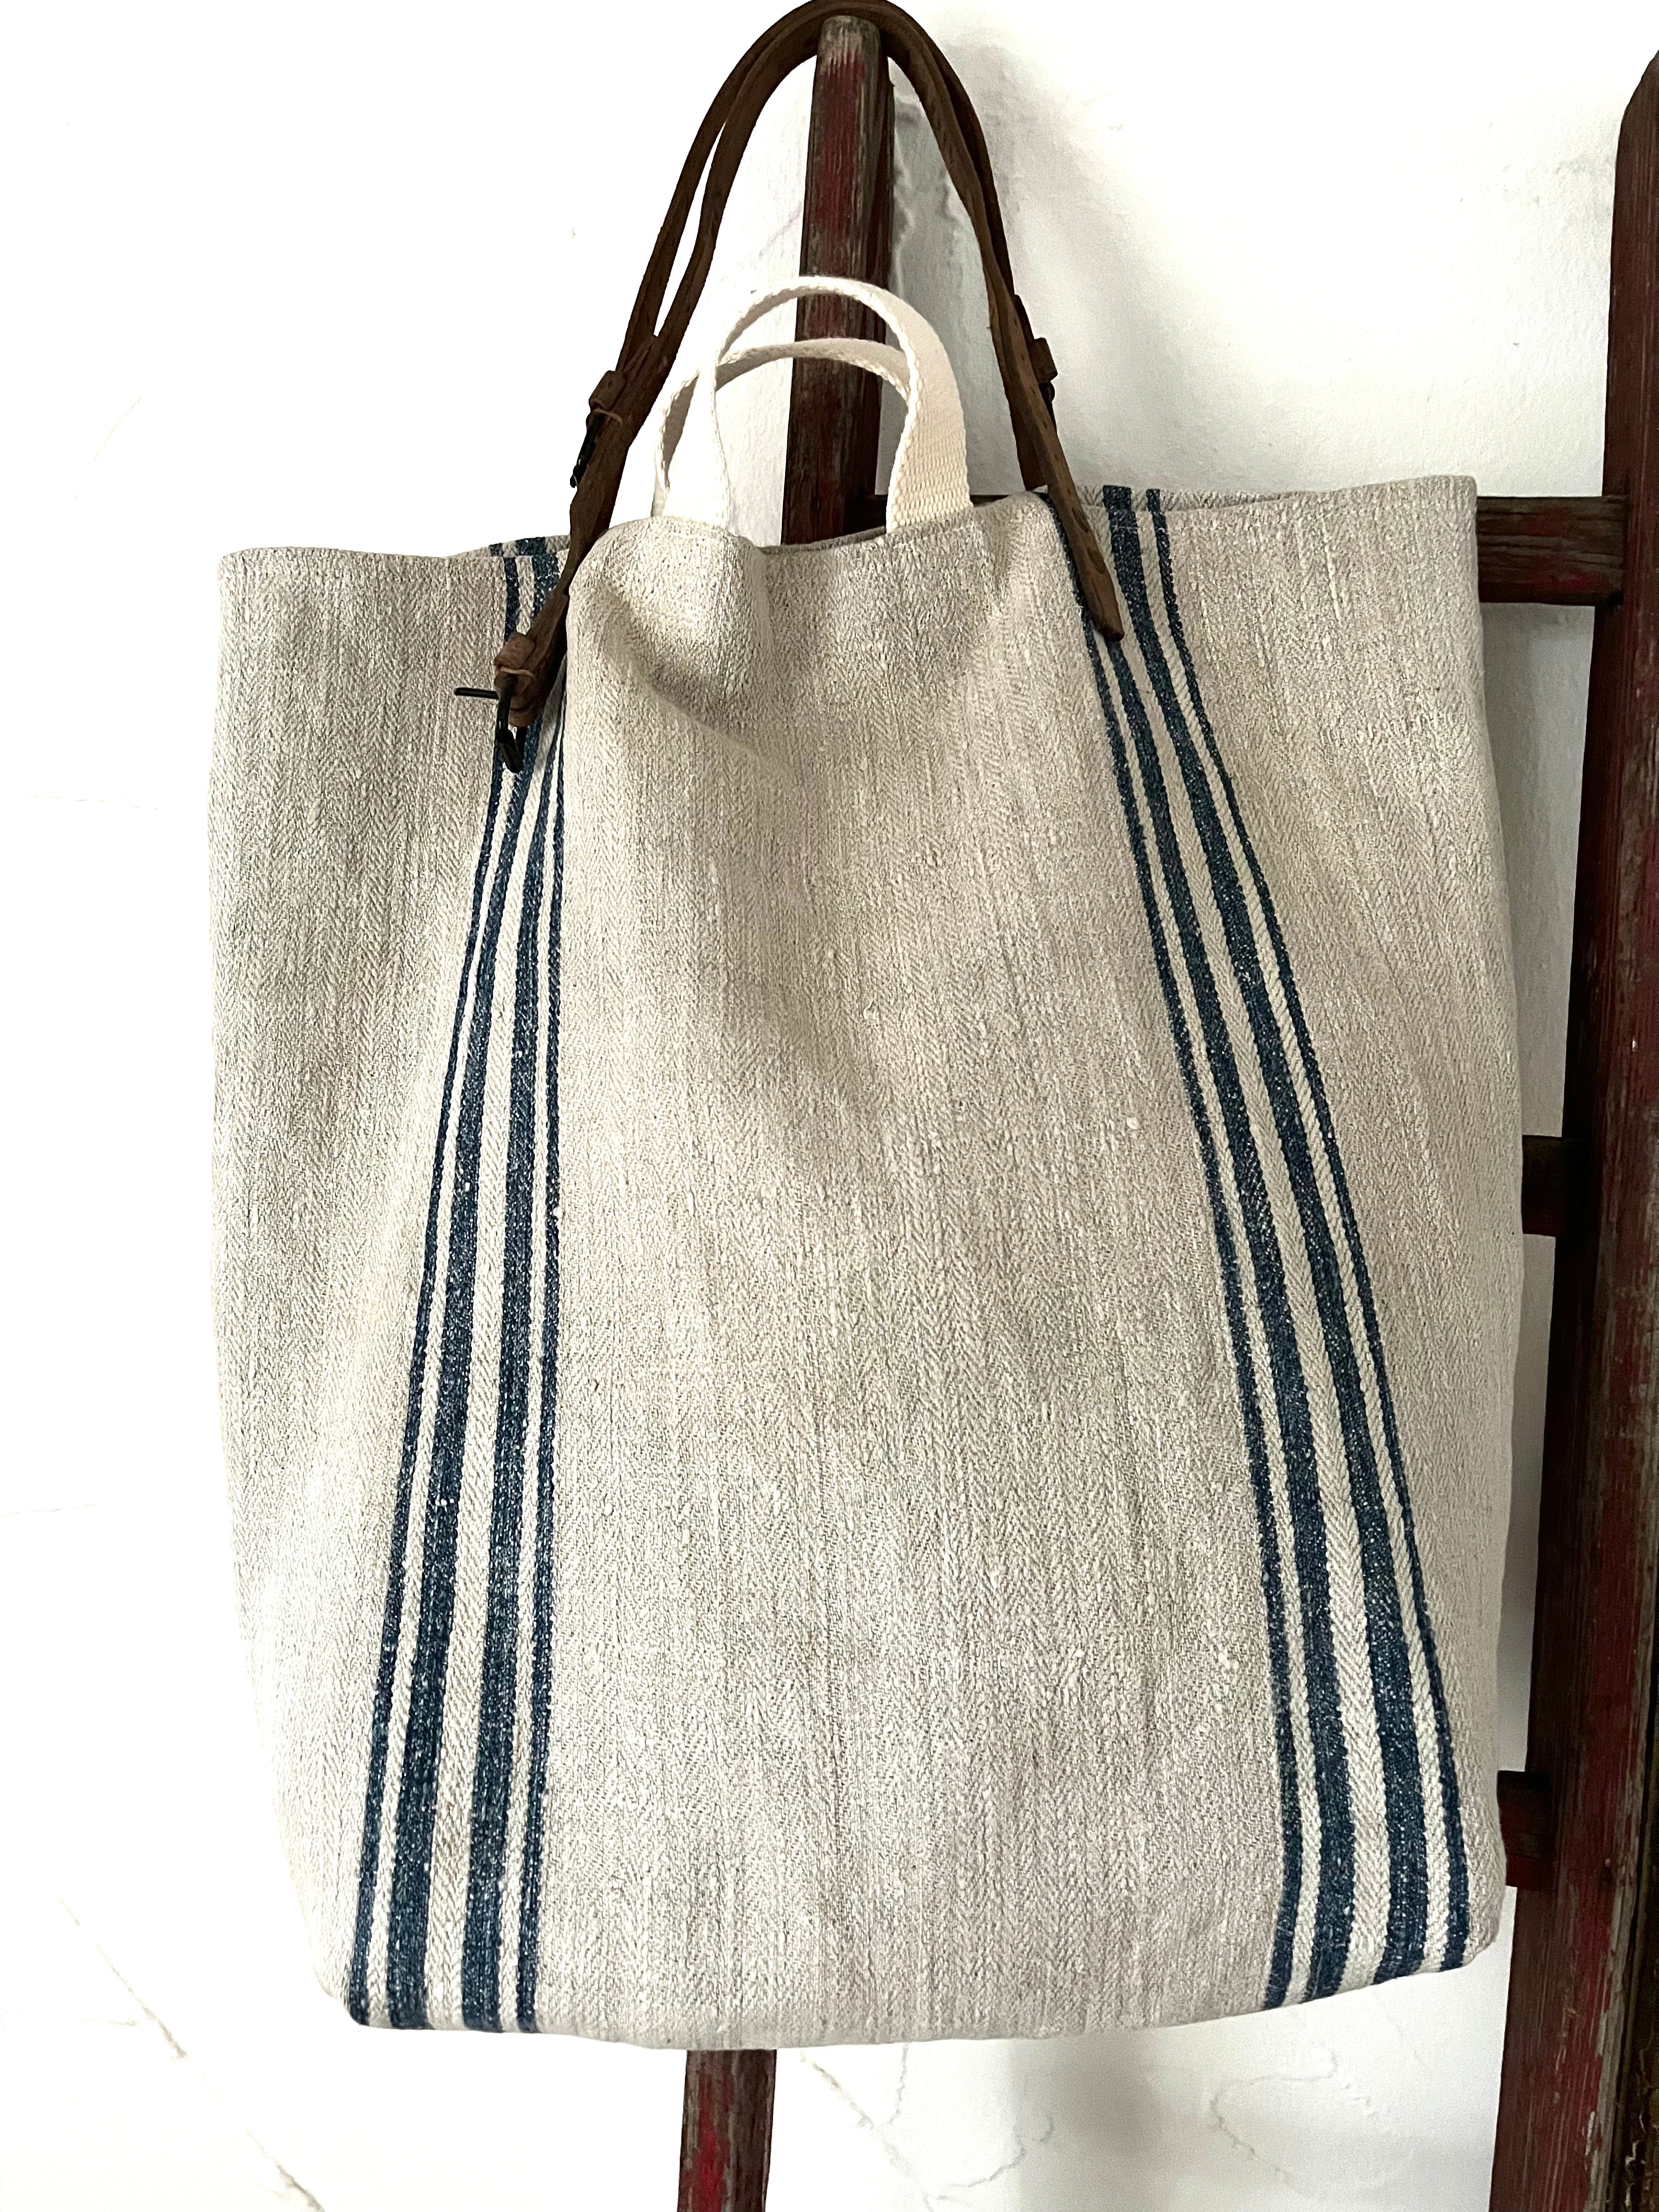 Big Blue striped Bag: Shopper aus sehr altem Leinensack mit Streifen